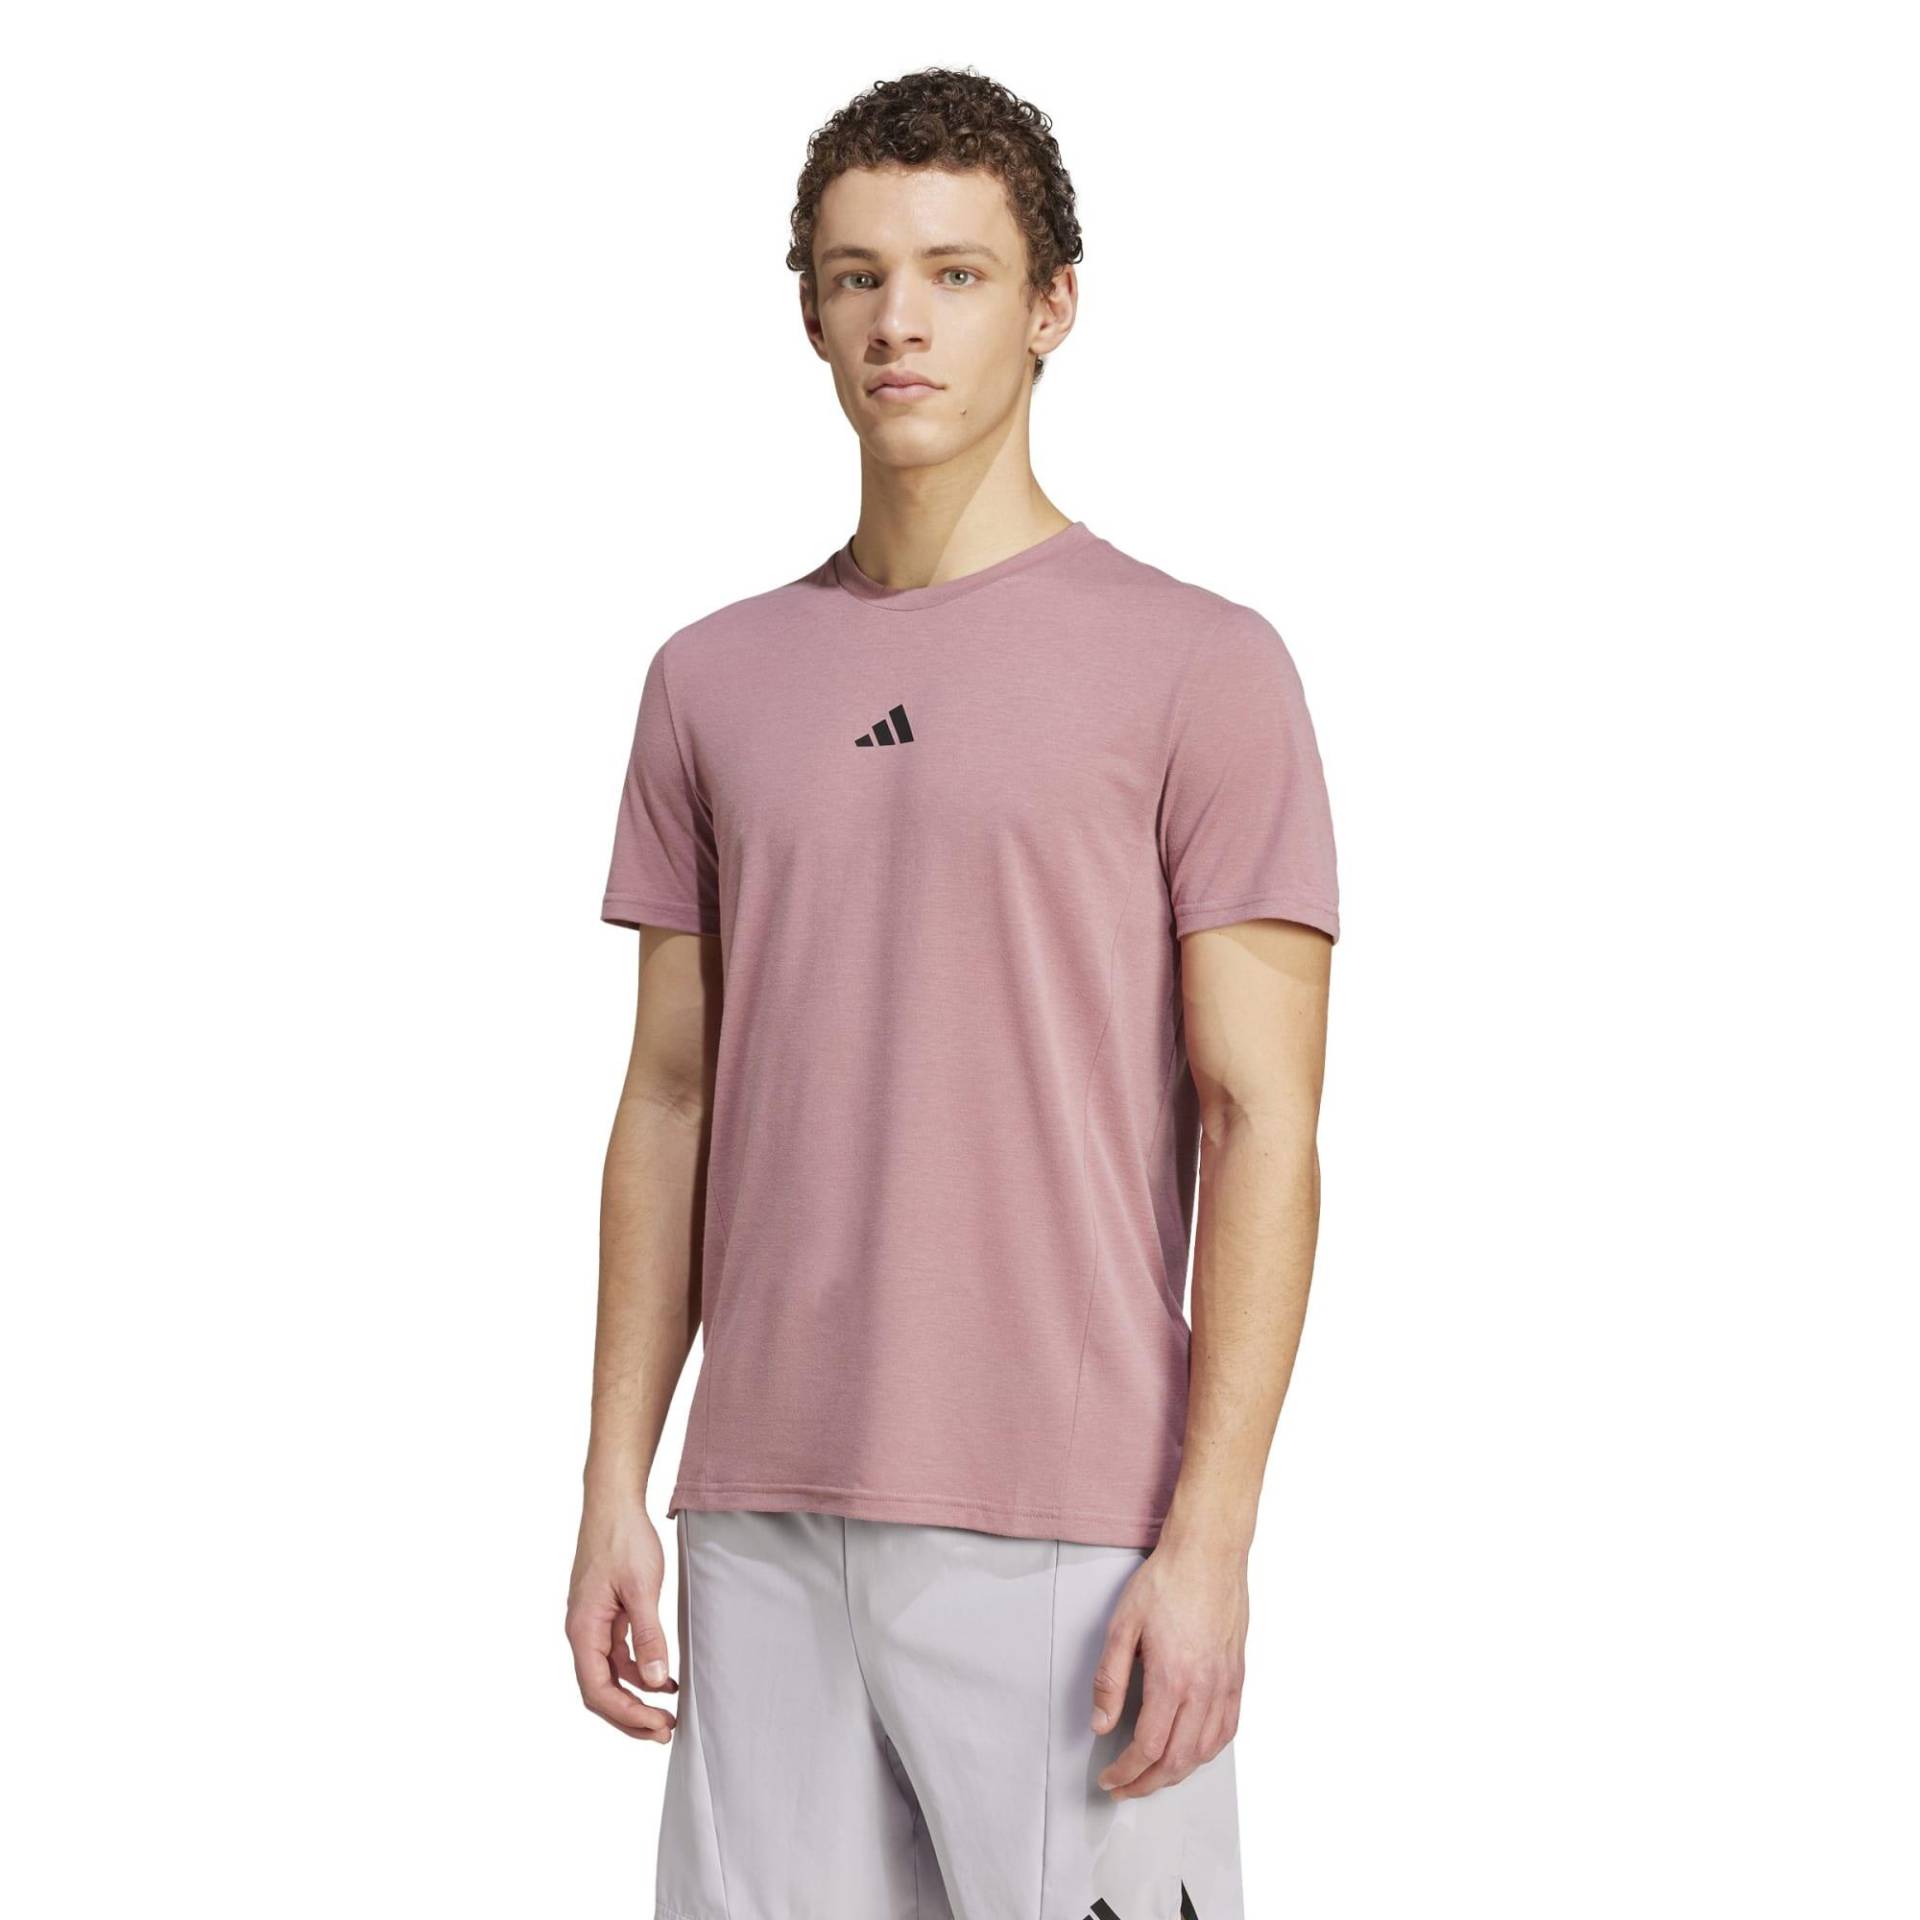 ADIDAS T-Shirt Herren - rot von Adidas